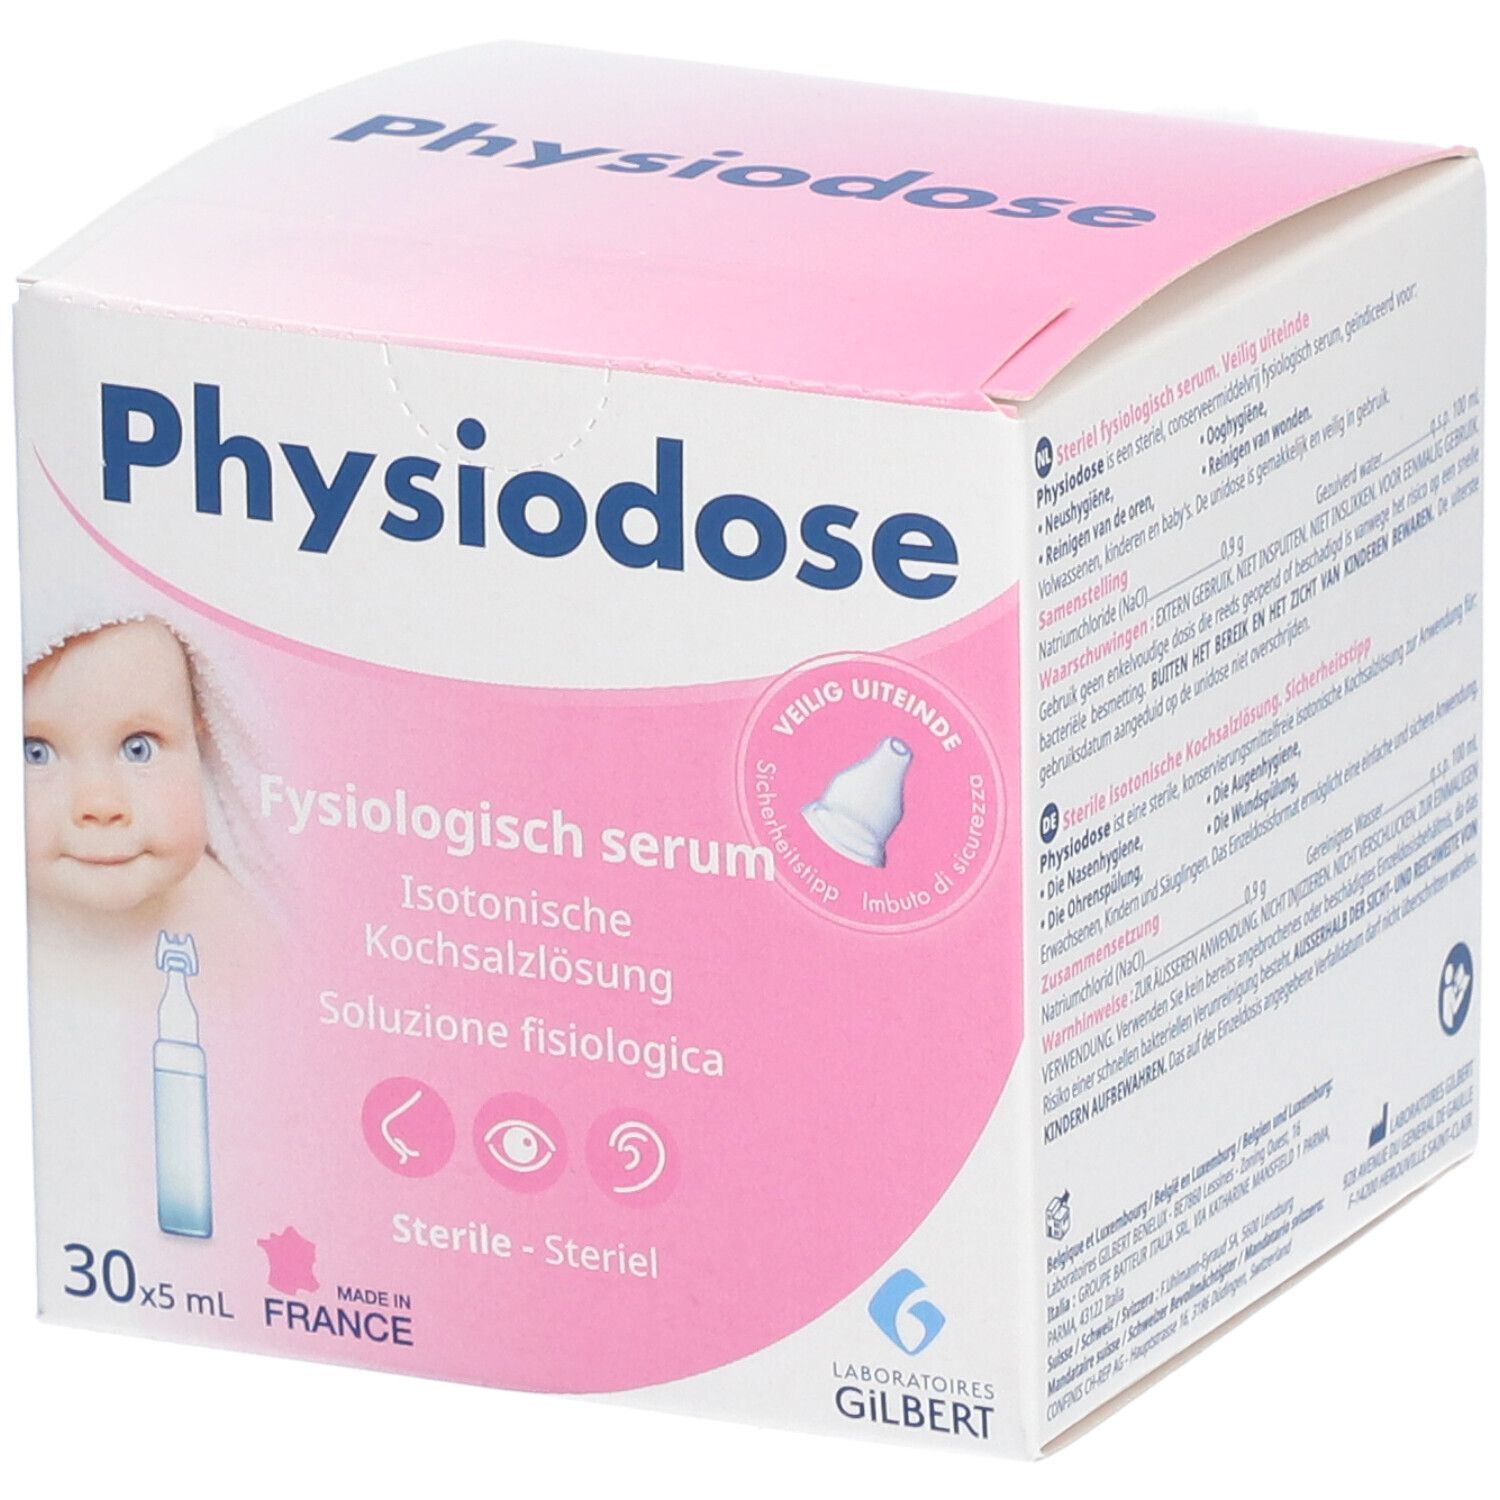 Physiodose : serum physiologique yeux, nez, oreille du bébé et de l'adulte